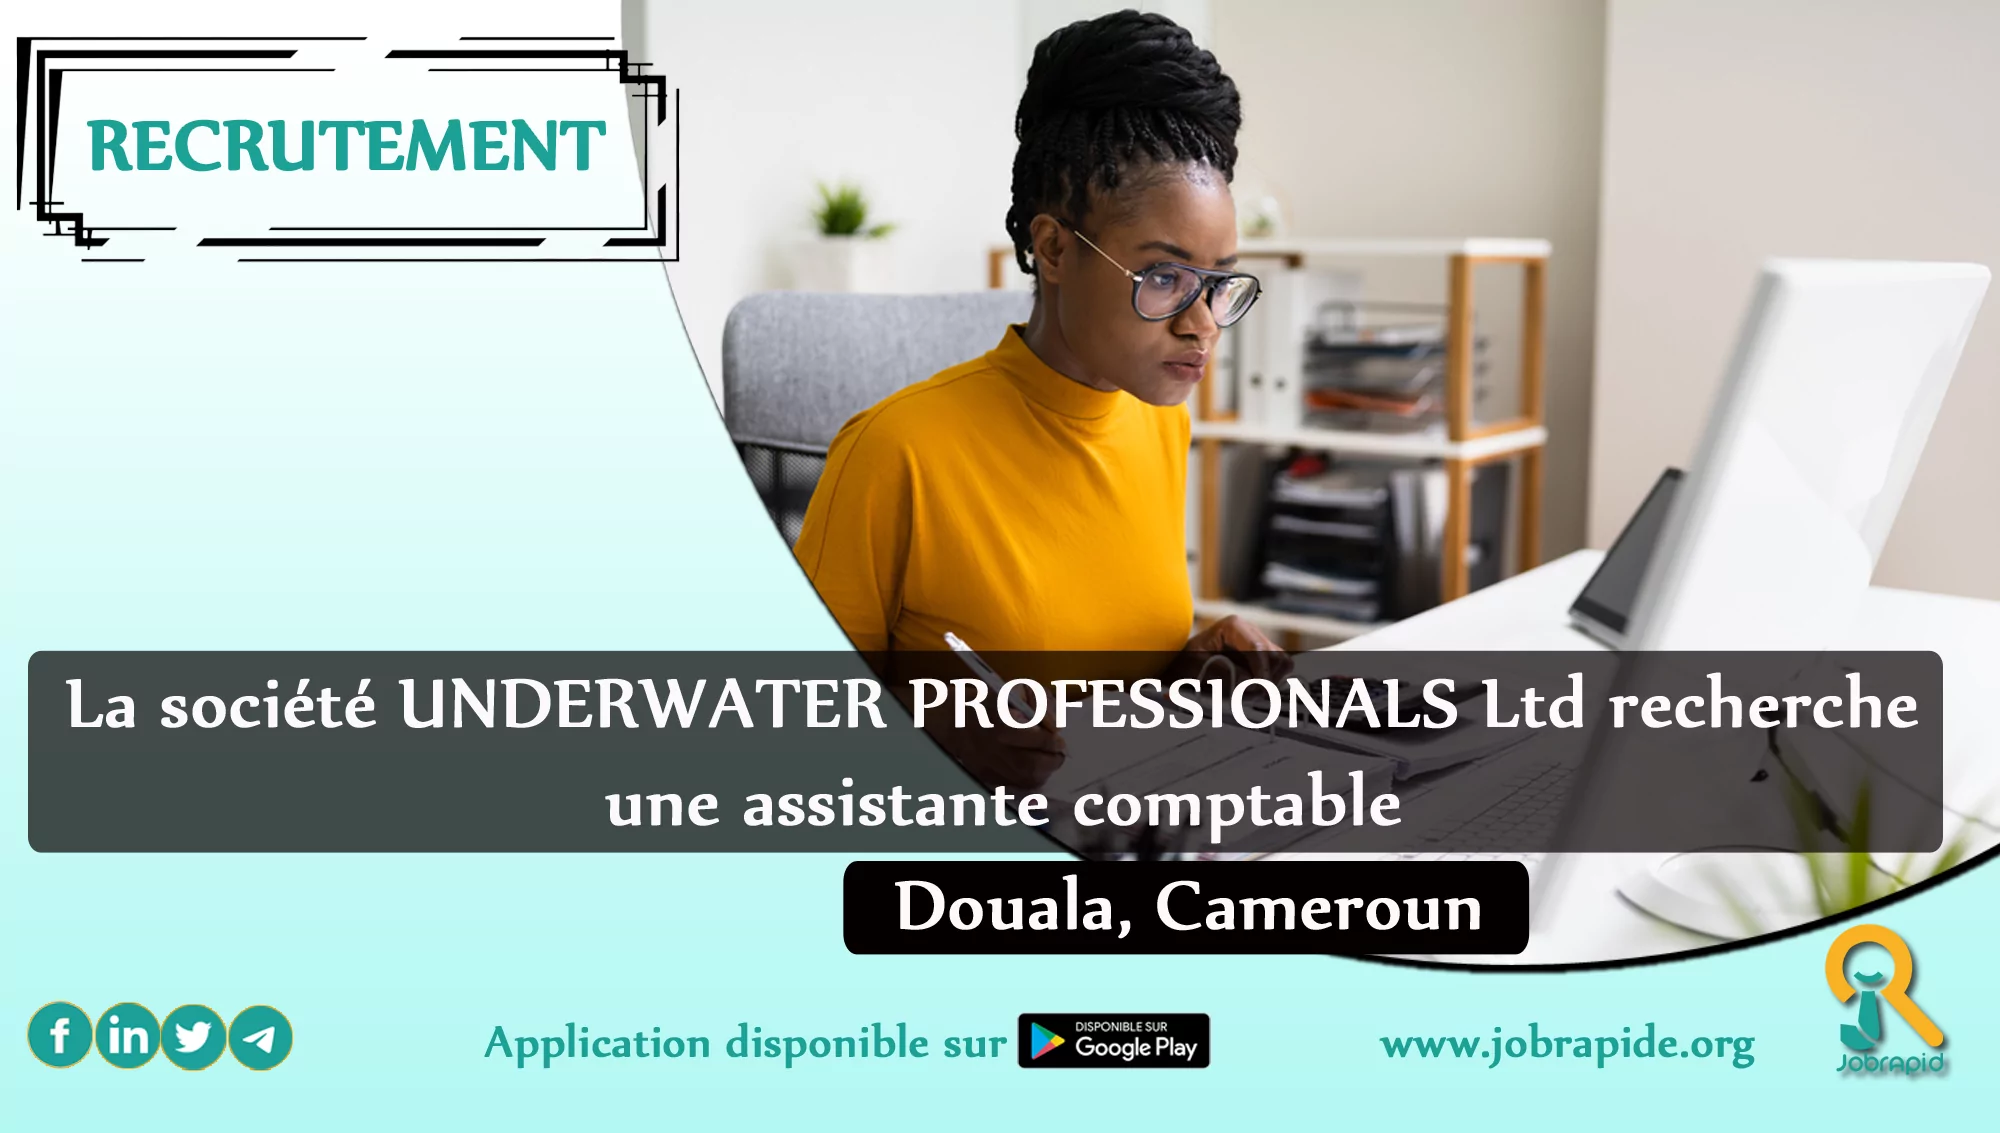 La société UNDERWATER PROFESSIONALS Ltd recherche une assistante comptable, Douala, Cameroun